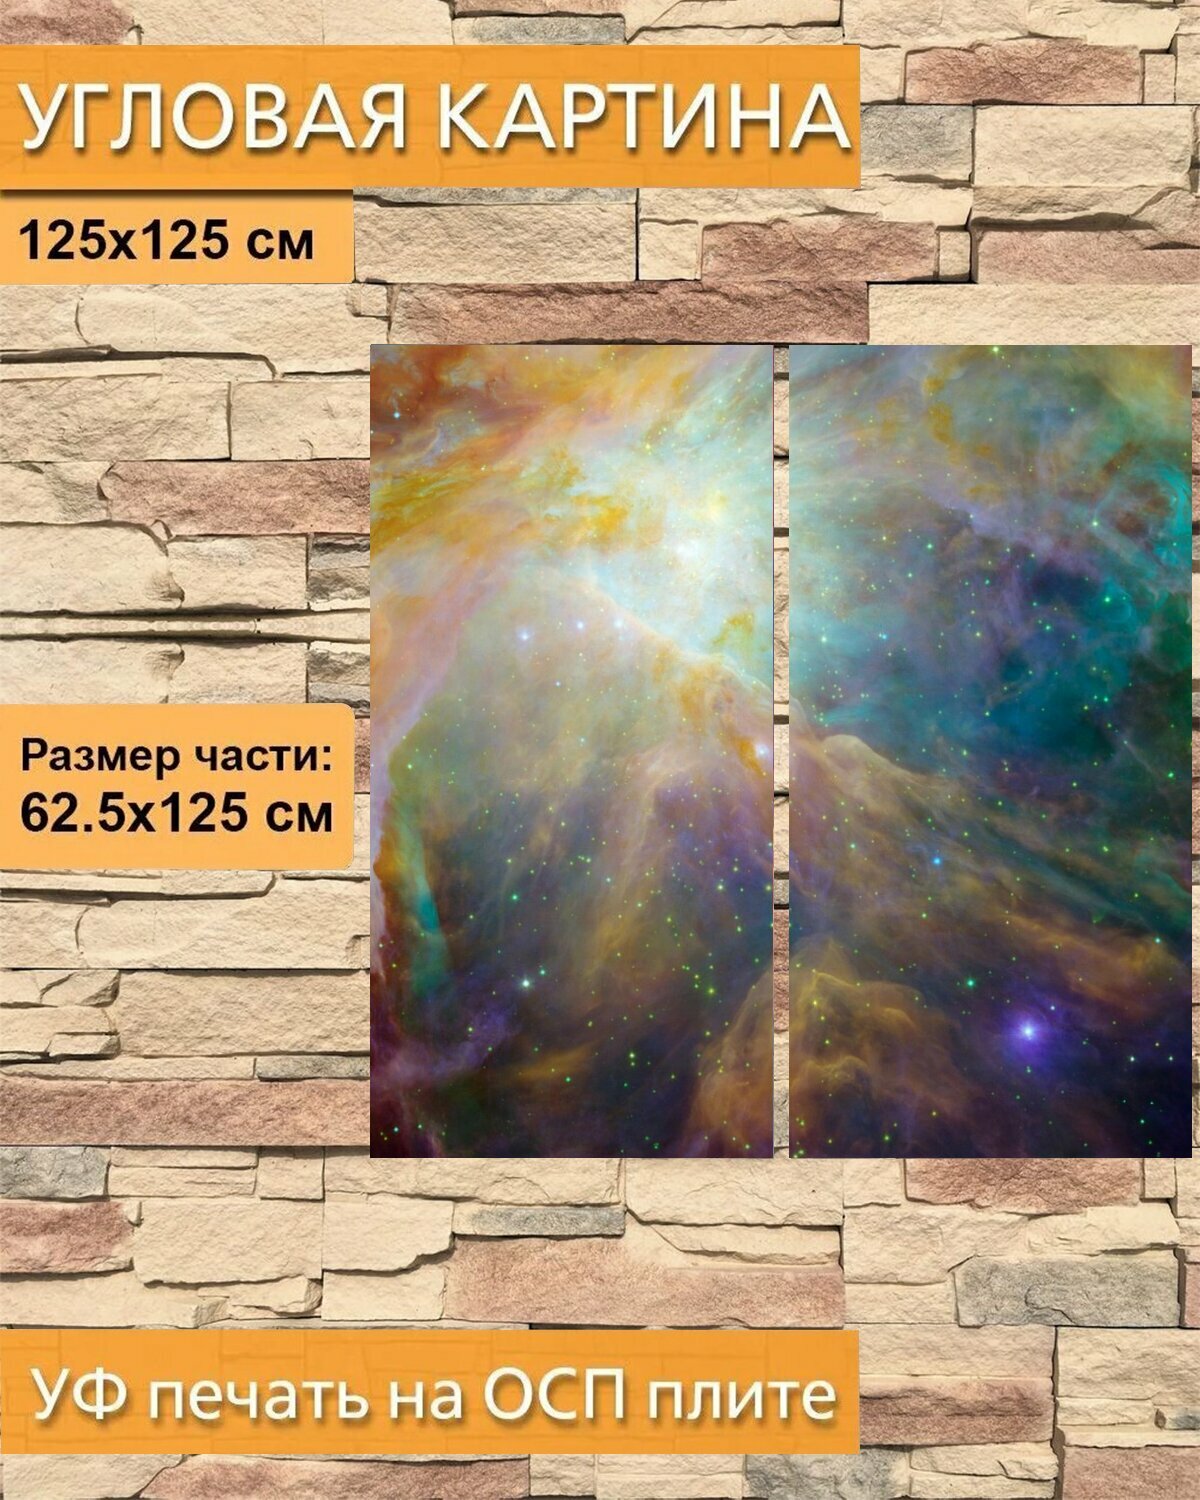 Модульная картина на ОСП "Туманность ориона, выброс тумана, созвездие орион" 125x125 см. 2 части для интерьера на стену